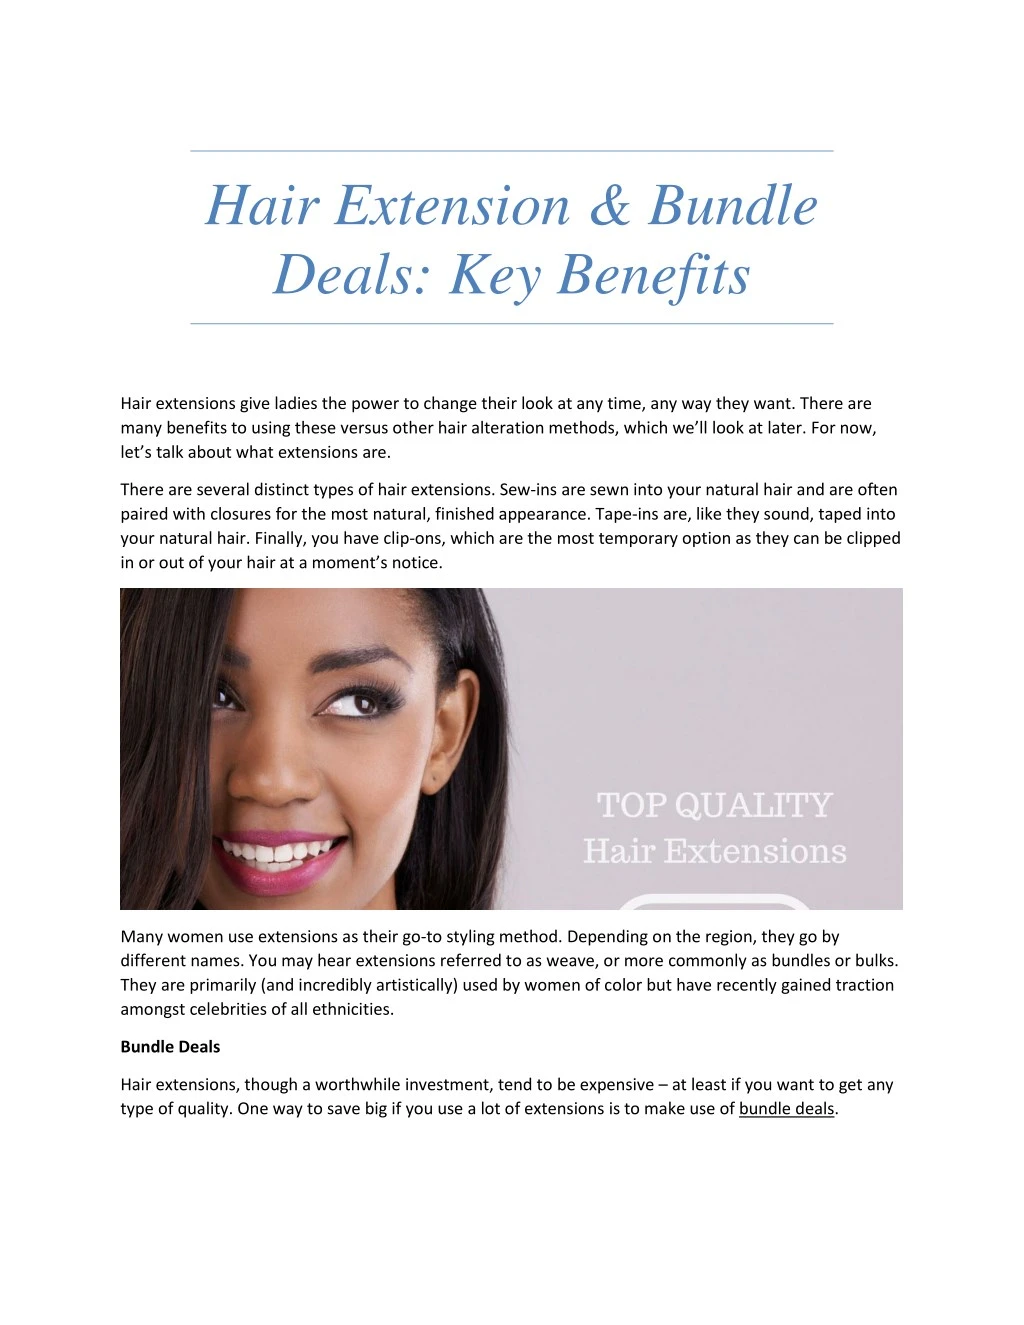 hair extension bundle deals key benefits